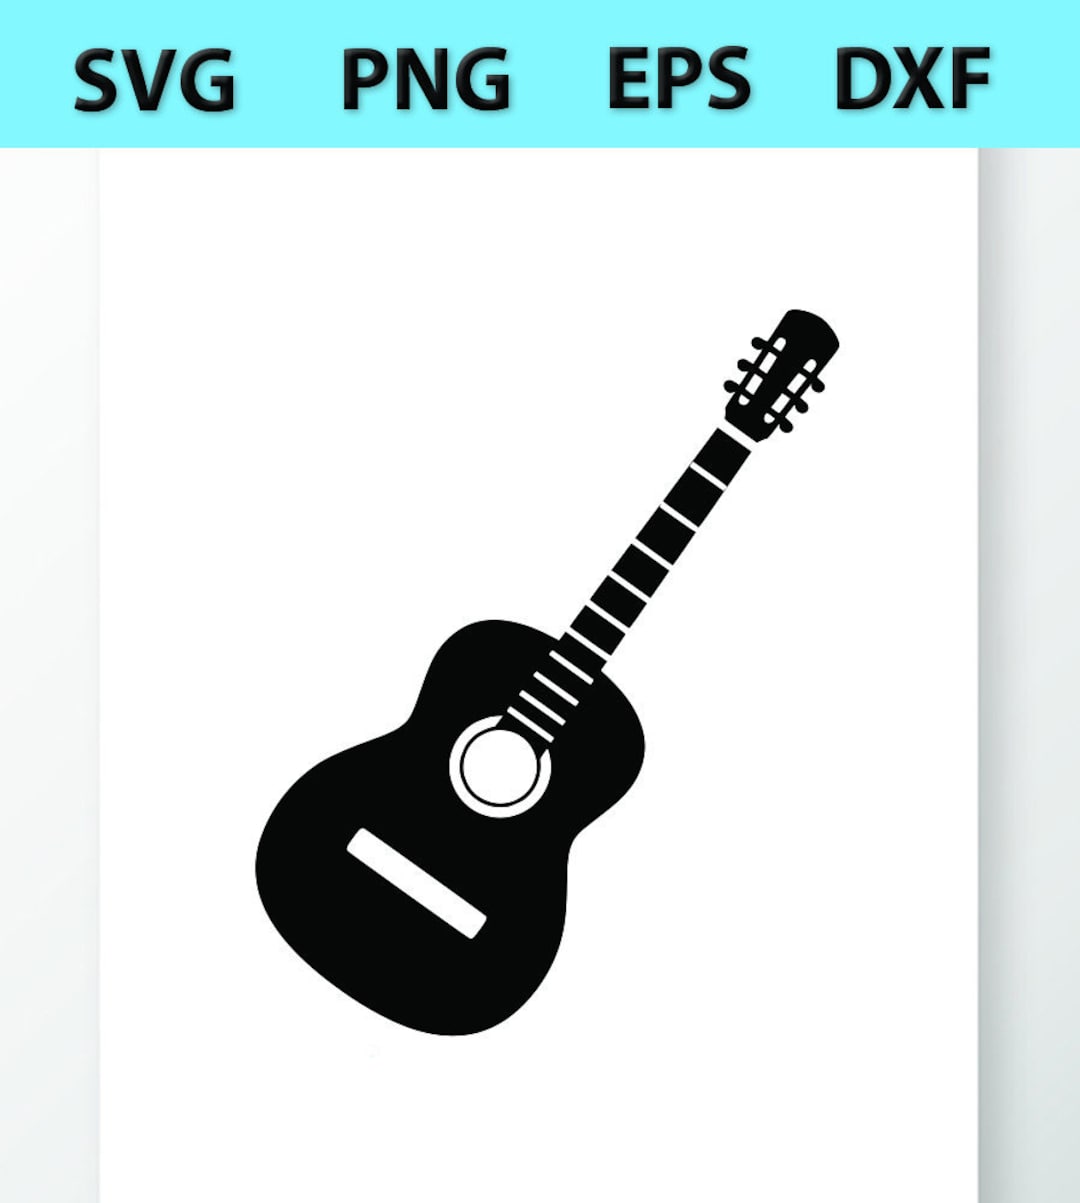 Cordes de guitare svg, dxf, png, pdf, eps, format de